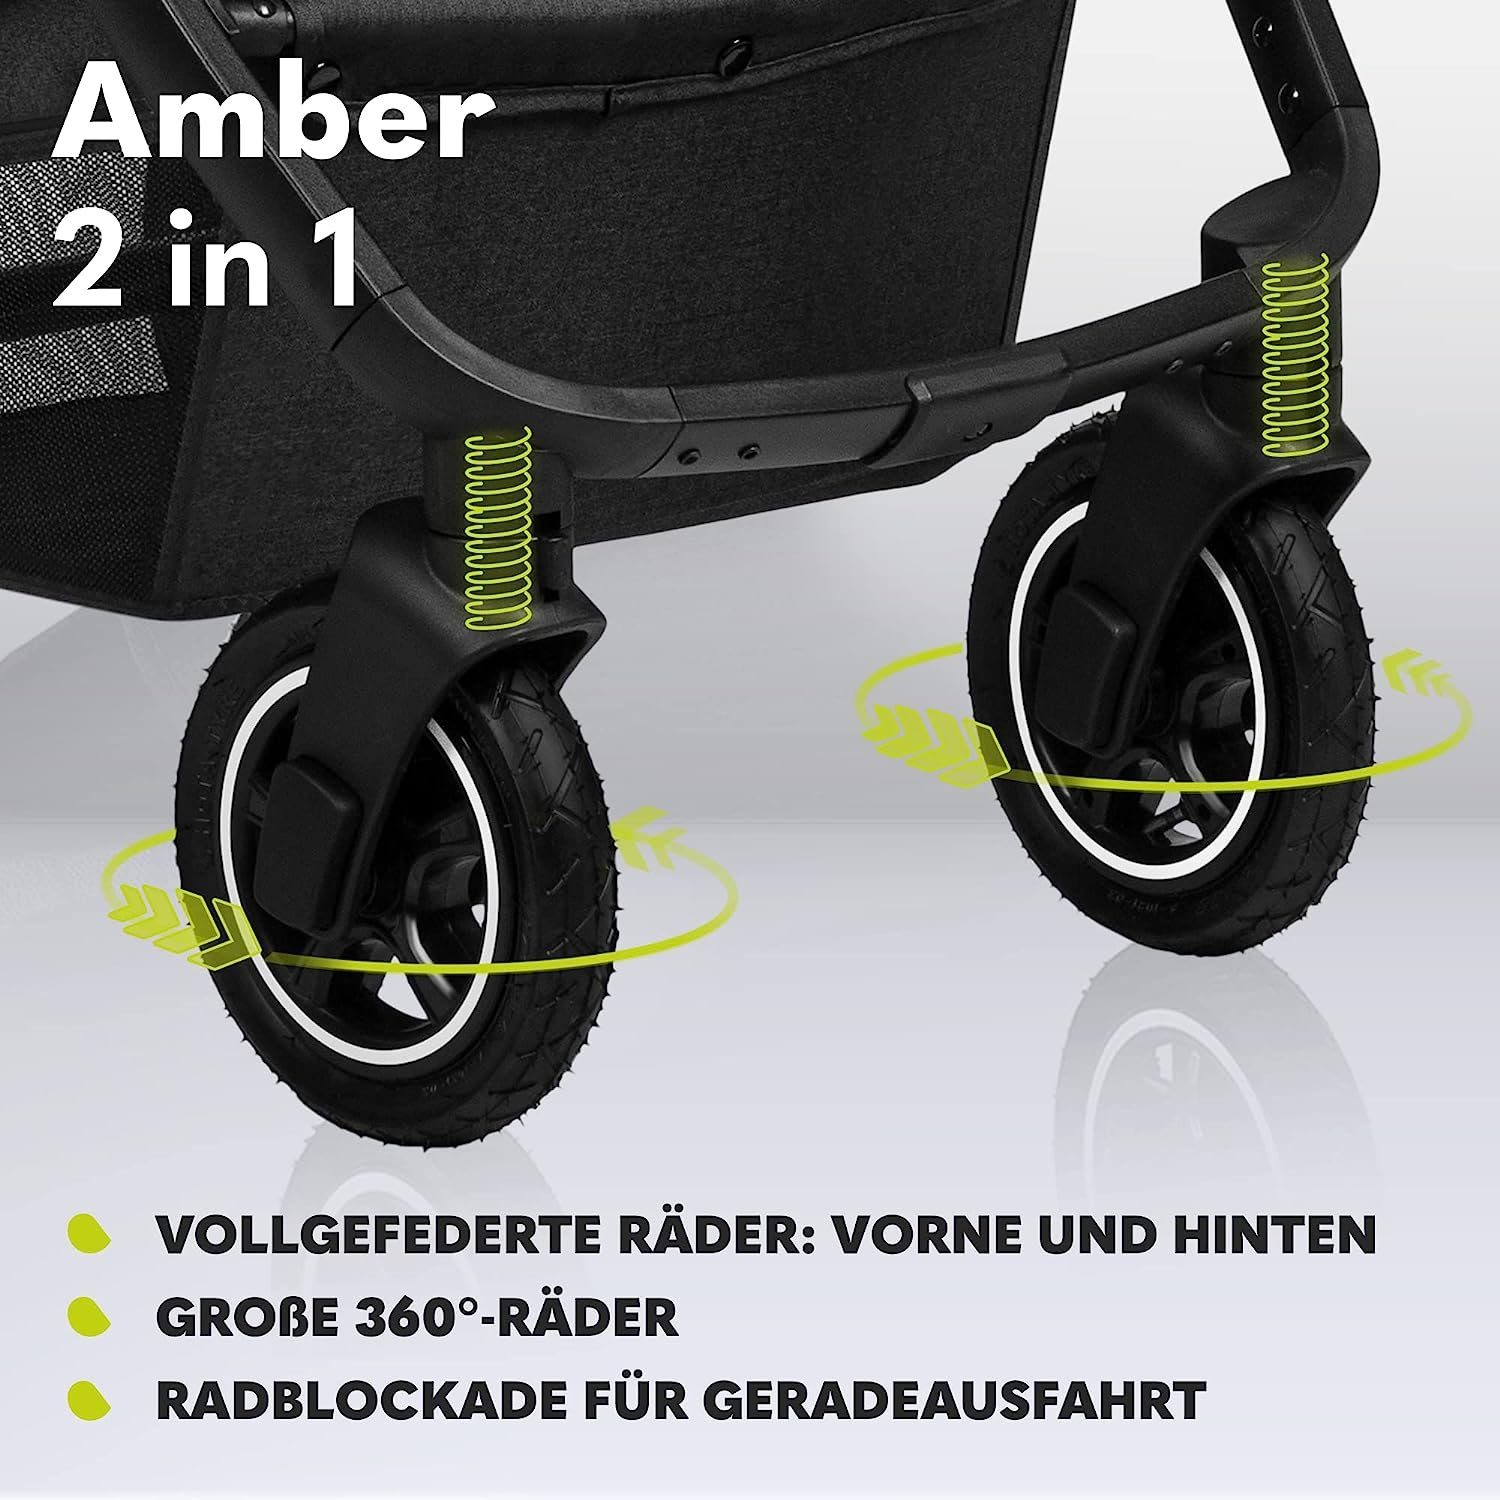 lionelo Kombi-Kinderwagen Amber, Tasche 2in1 Schutzüberzug Dreamin Regenschutz Moskitonetz